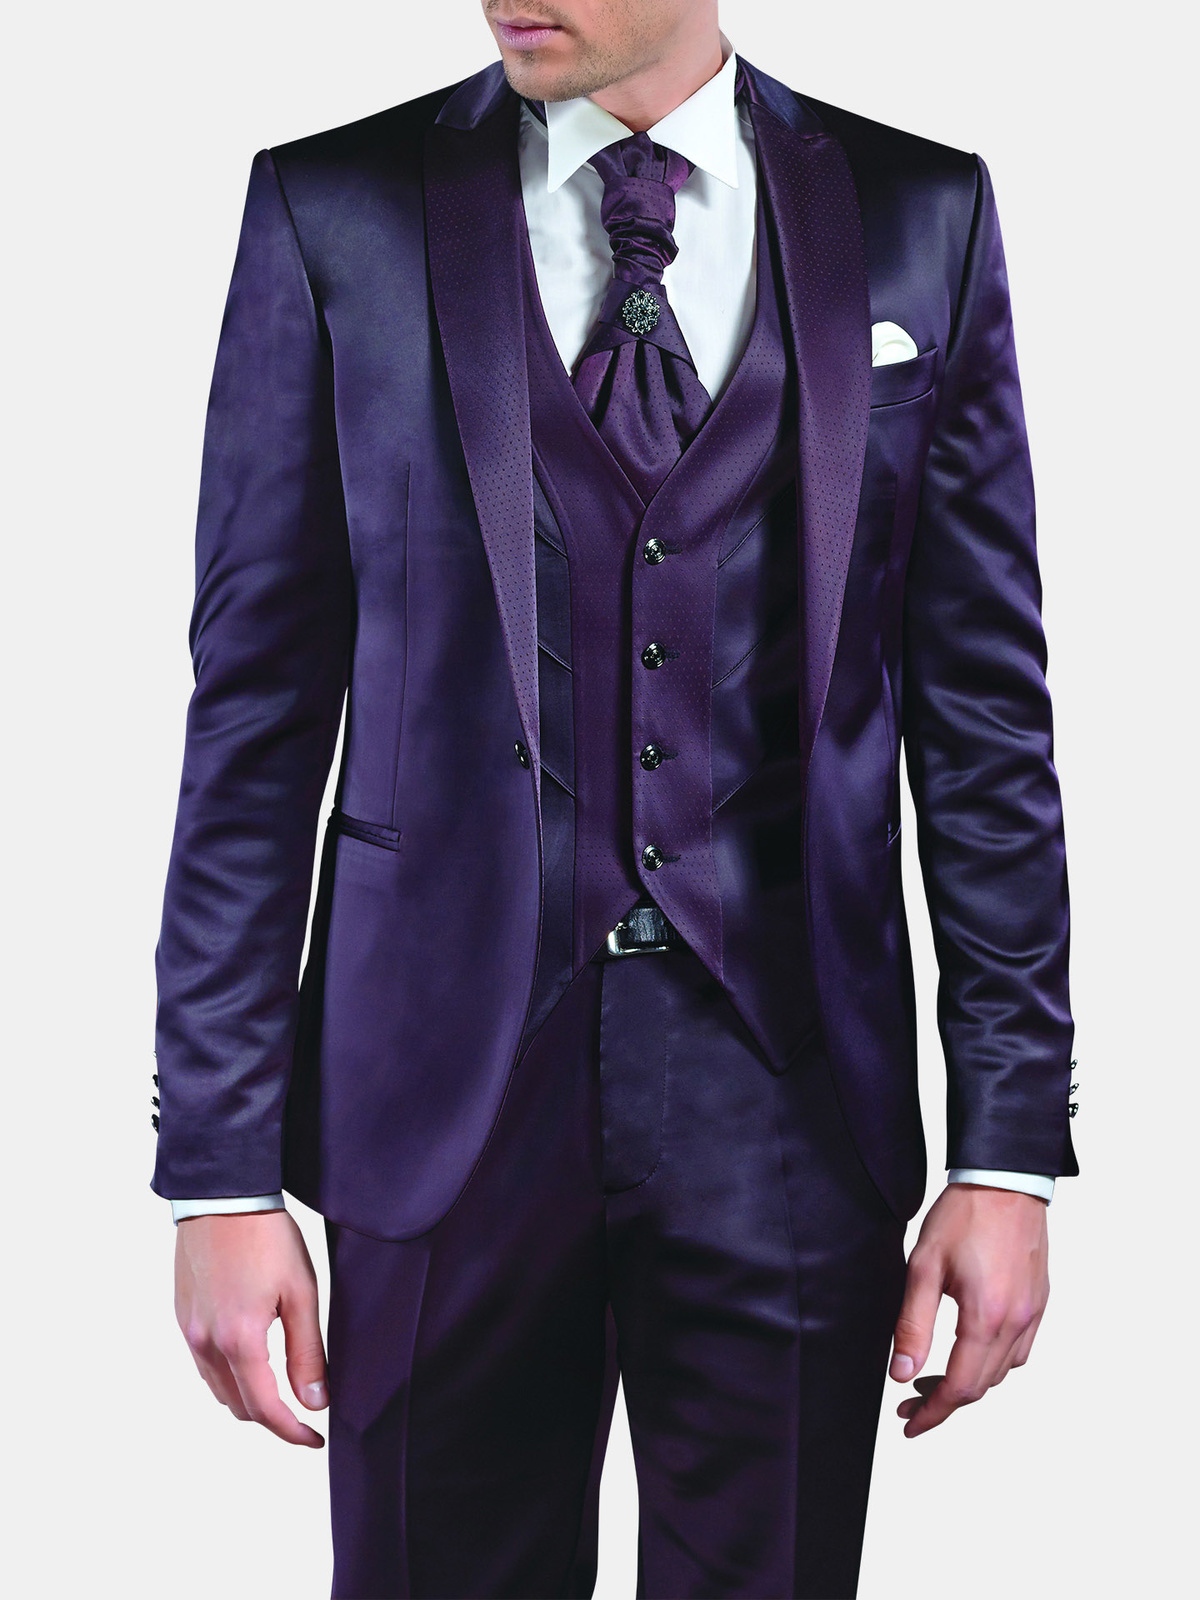 Свадебный костюм мужской фиолетовый